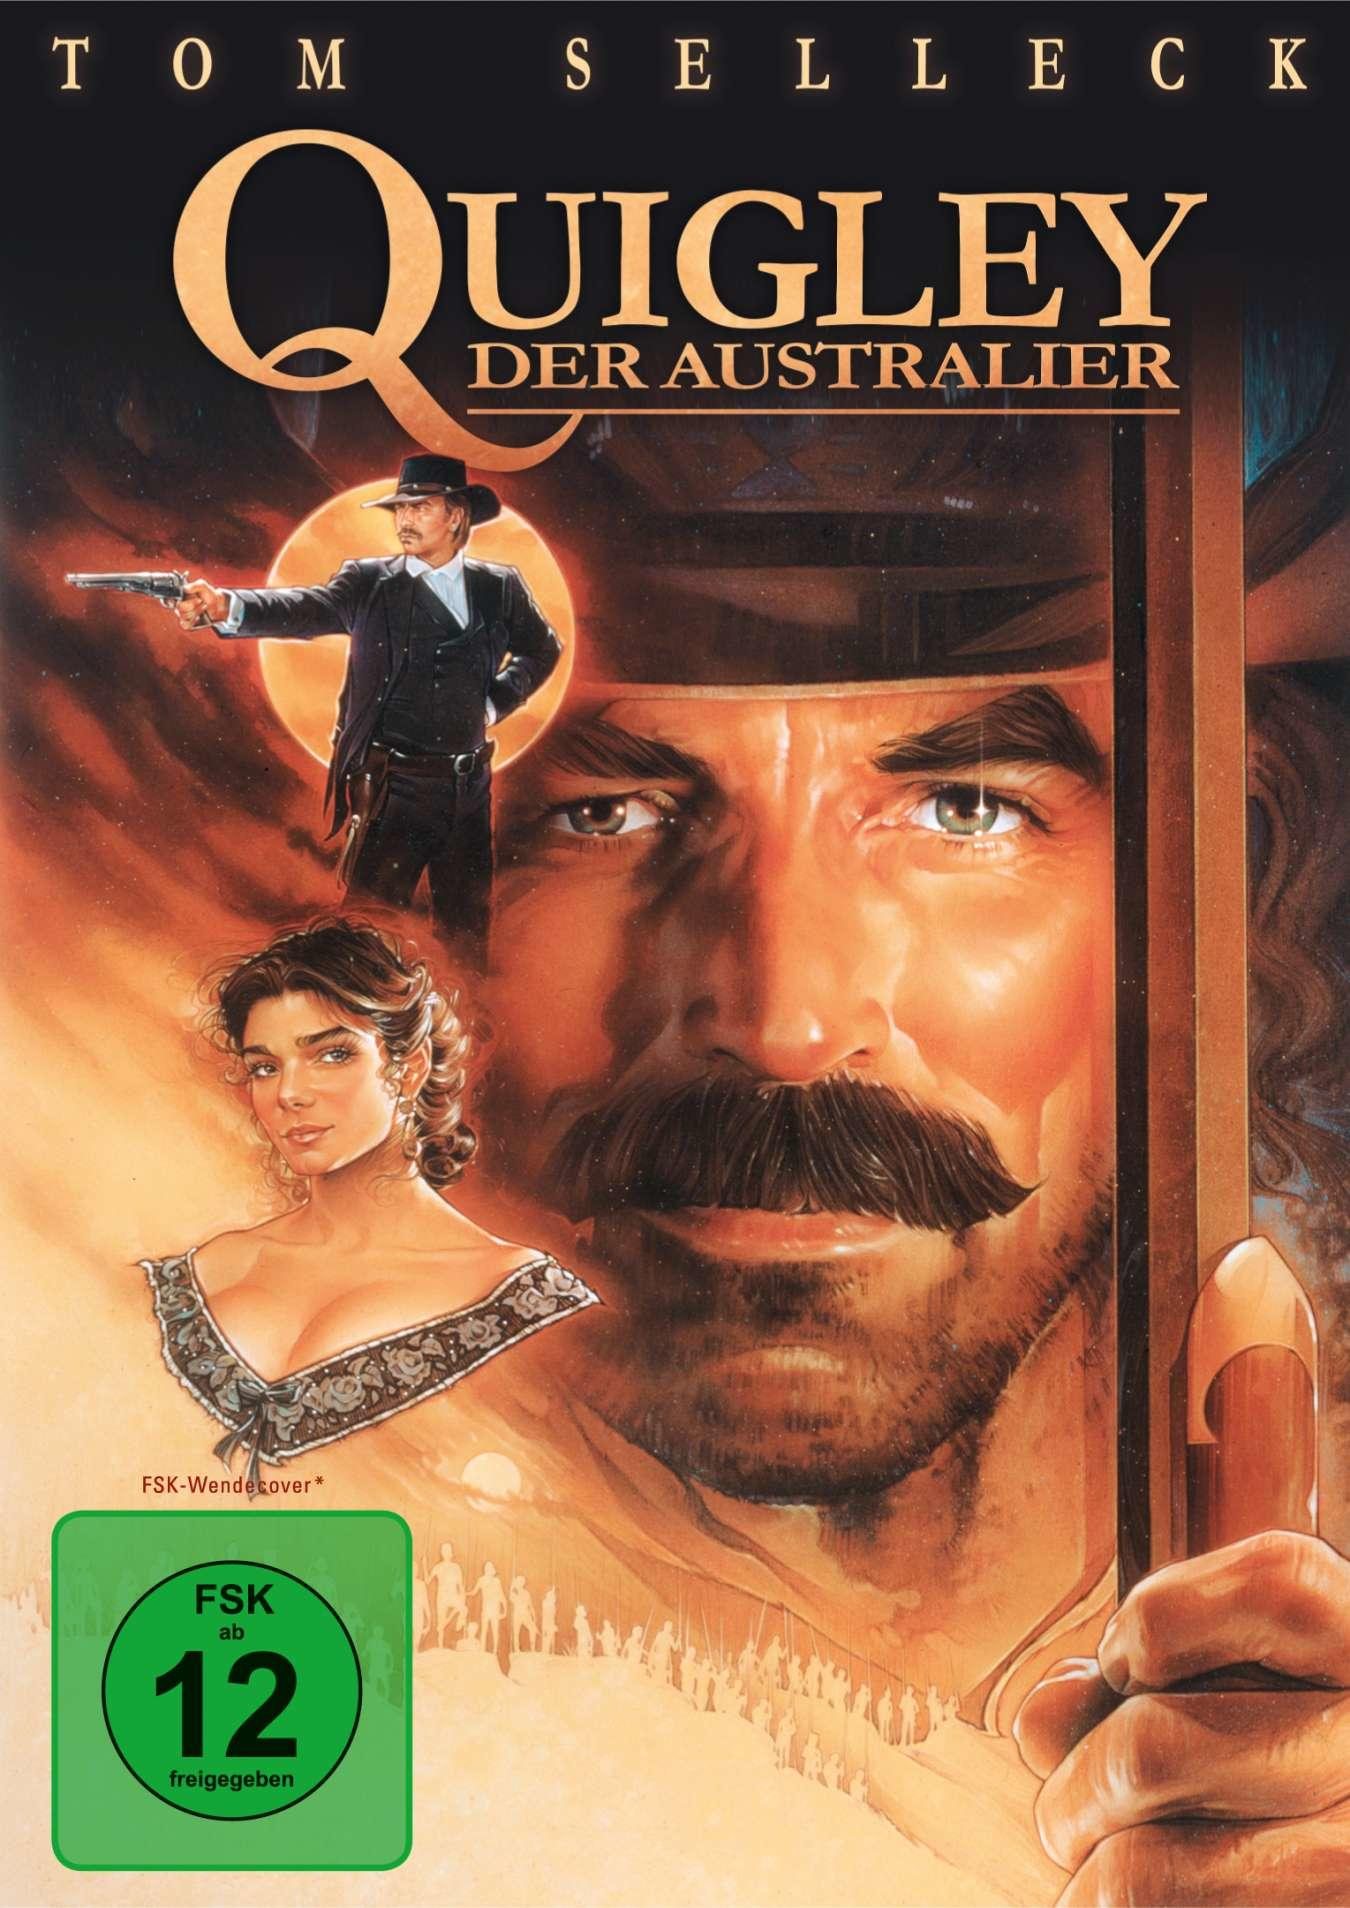 Quigley, der Australier DVD